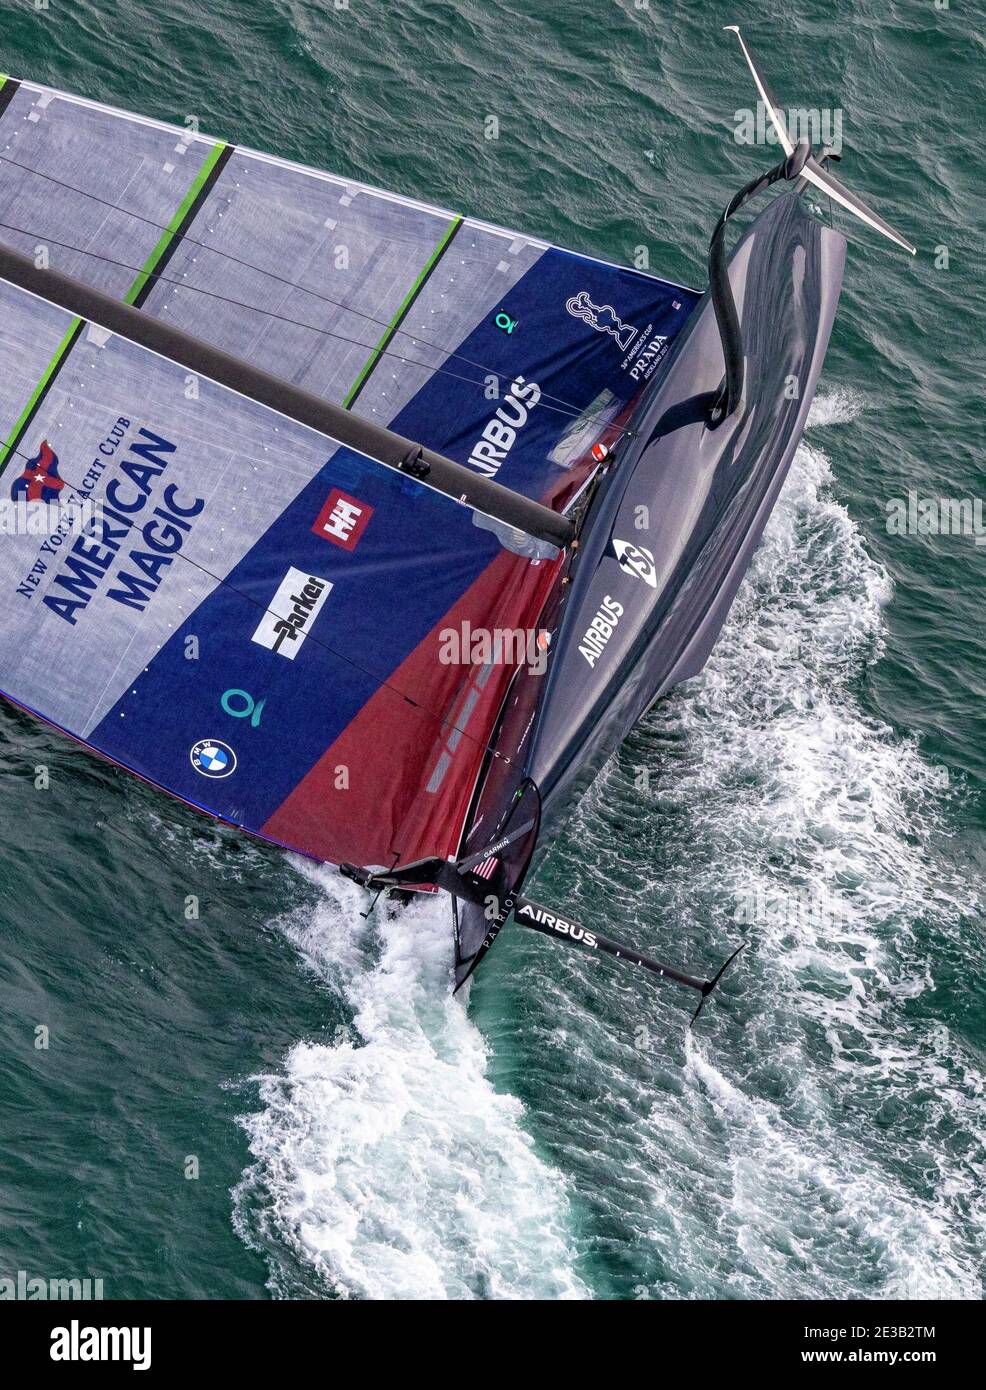 (210118) -- AUCKLAND, le 18 janvier 2021 (Xinhua) -- le bateau American Magic Boat Patriot des États-Unis cachonne lors du match du 3e jour de la série America's Cup challenger à Auckland, en Nouvelle-Zélande, le 17 janvier 2021. (COR36/Studio Borlenghi/document via Xinhua) Banque D'Images